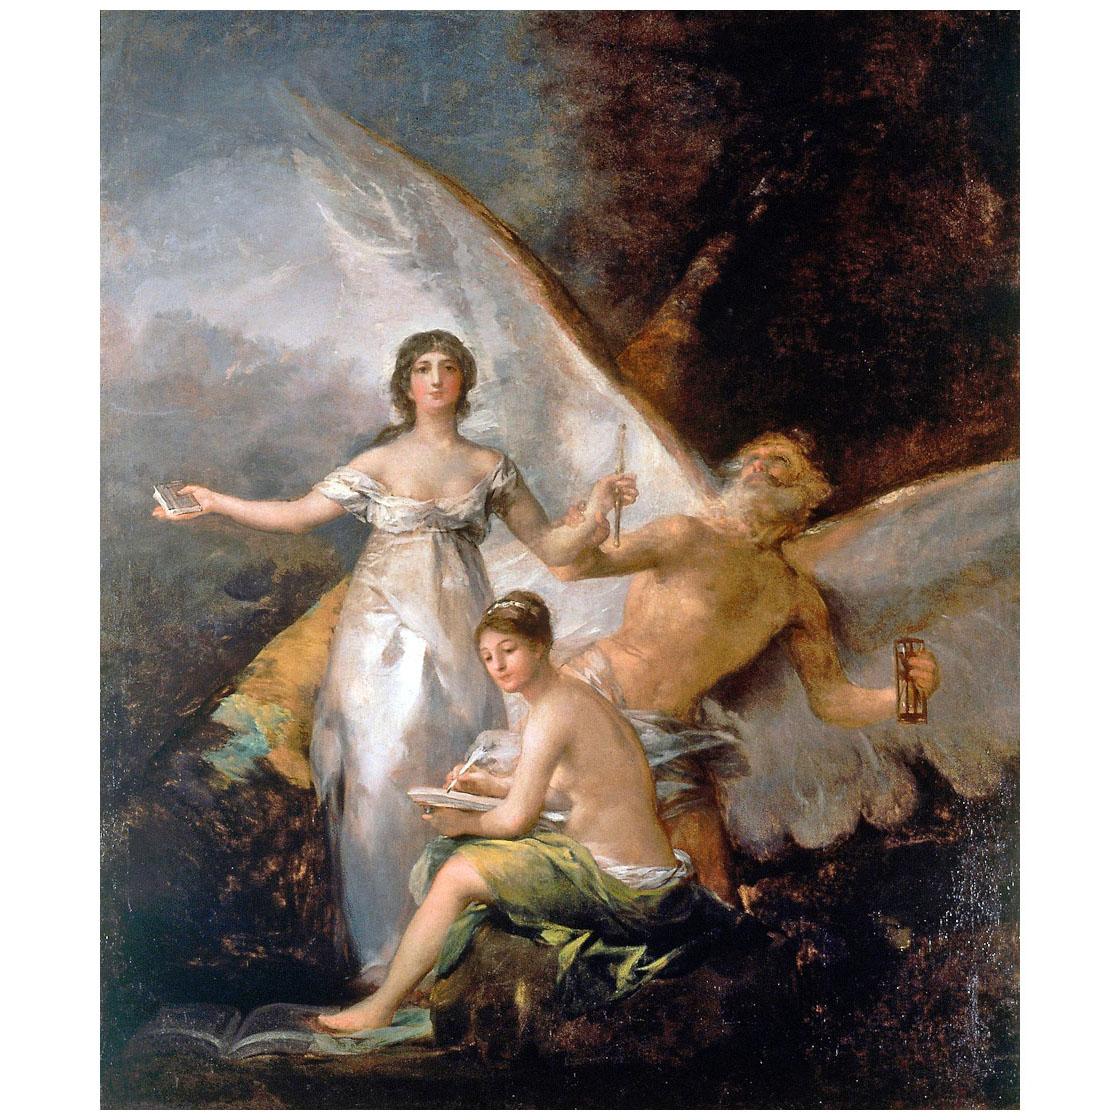 Francisco de Goya. La Verdad, el Tiempo y la Historia. 1800. Nationalmuseum Stockholm